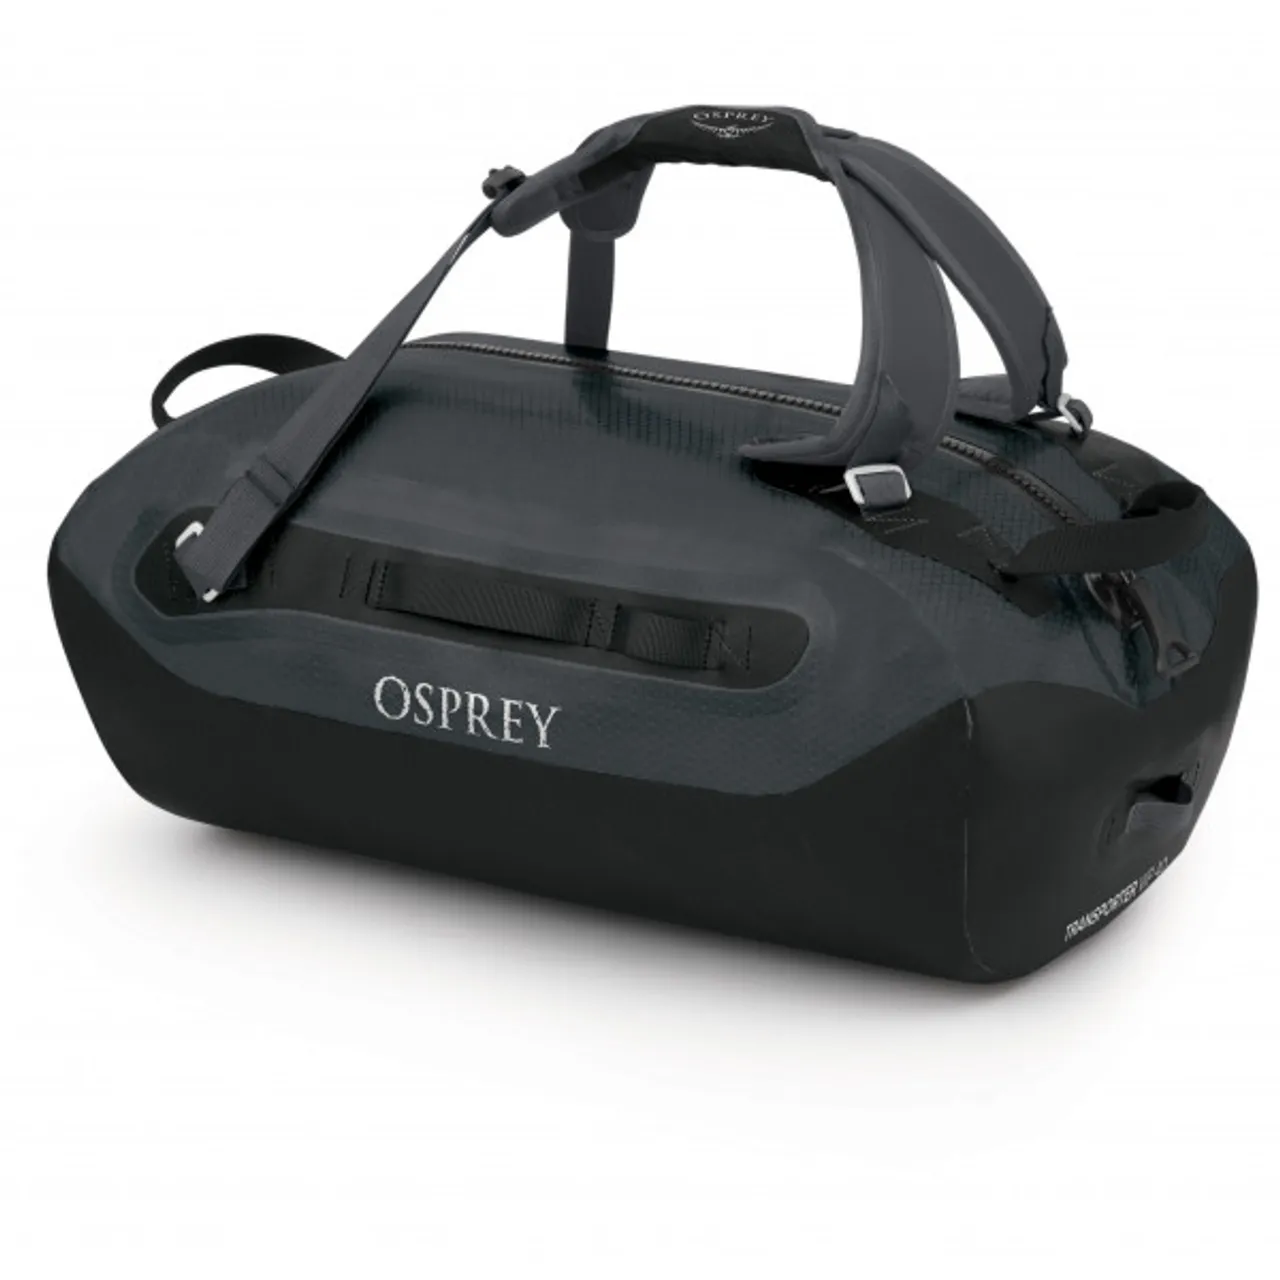 Osprey - Transporter WP Duffel 40 - Luggage size 40 l, black/grey